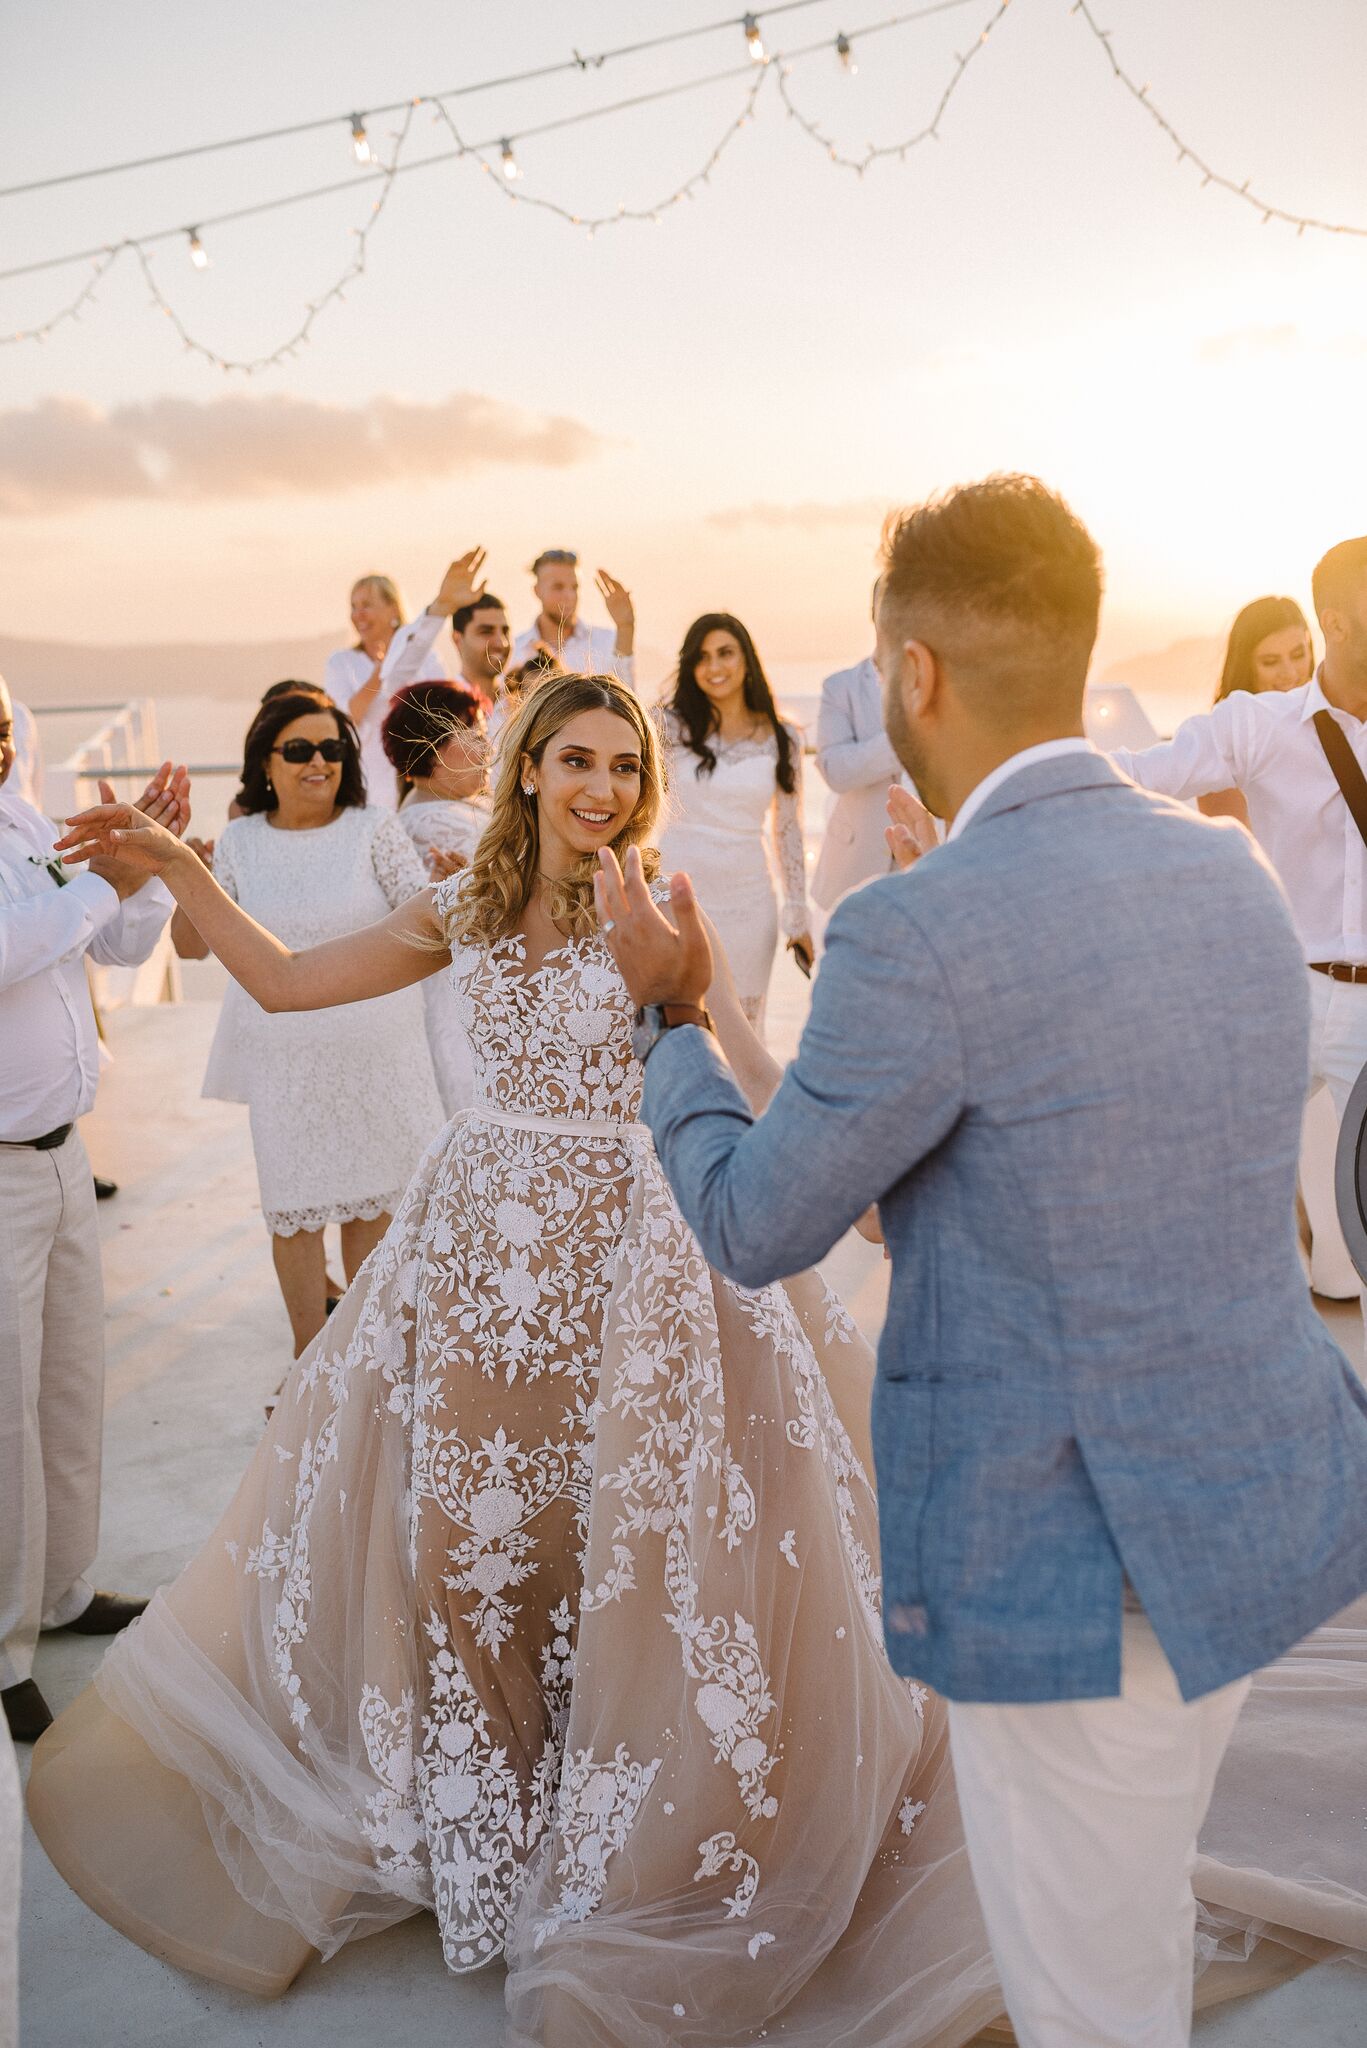 Engagement An all-white wedding set against the santorini sunset